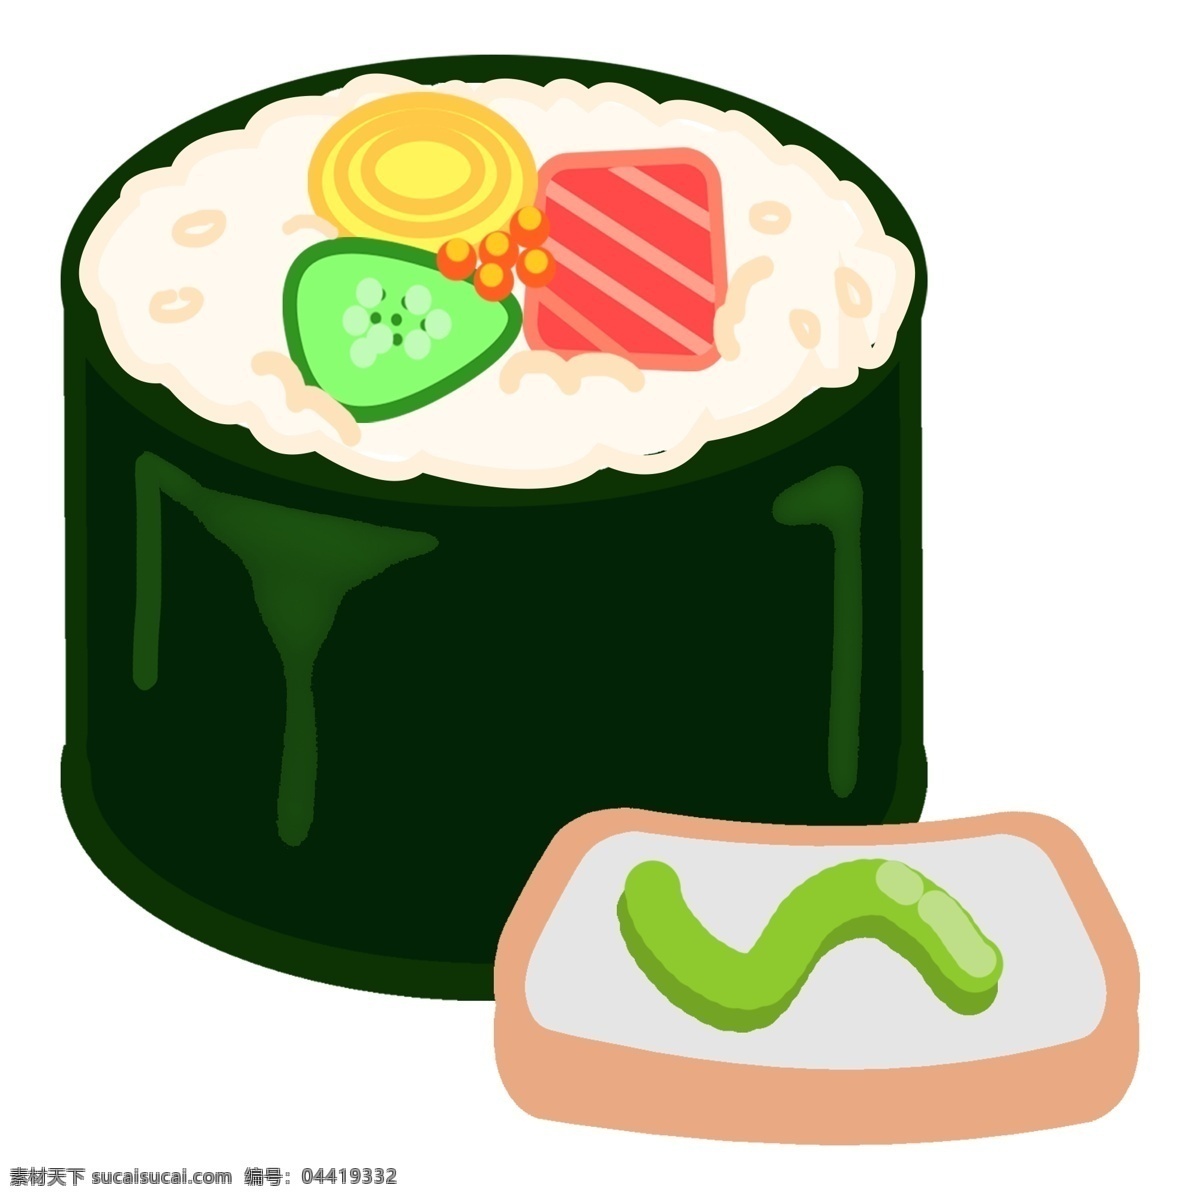 日本料理 寿司 插画 日本寿司 日式寿司 美味寿司食物 海苔寿司插画 三文鱼